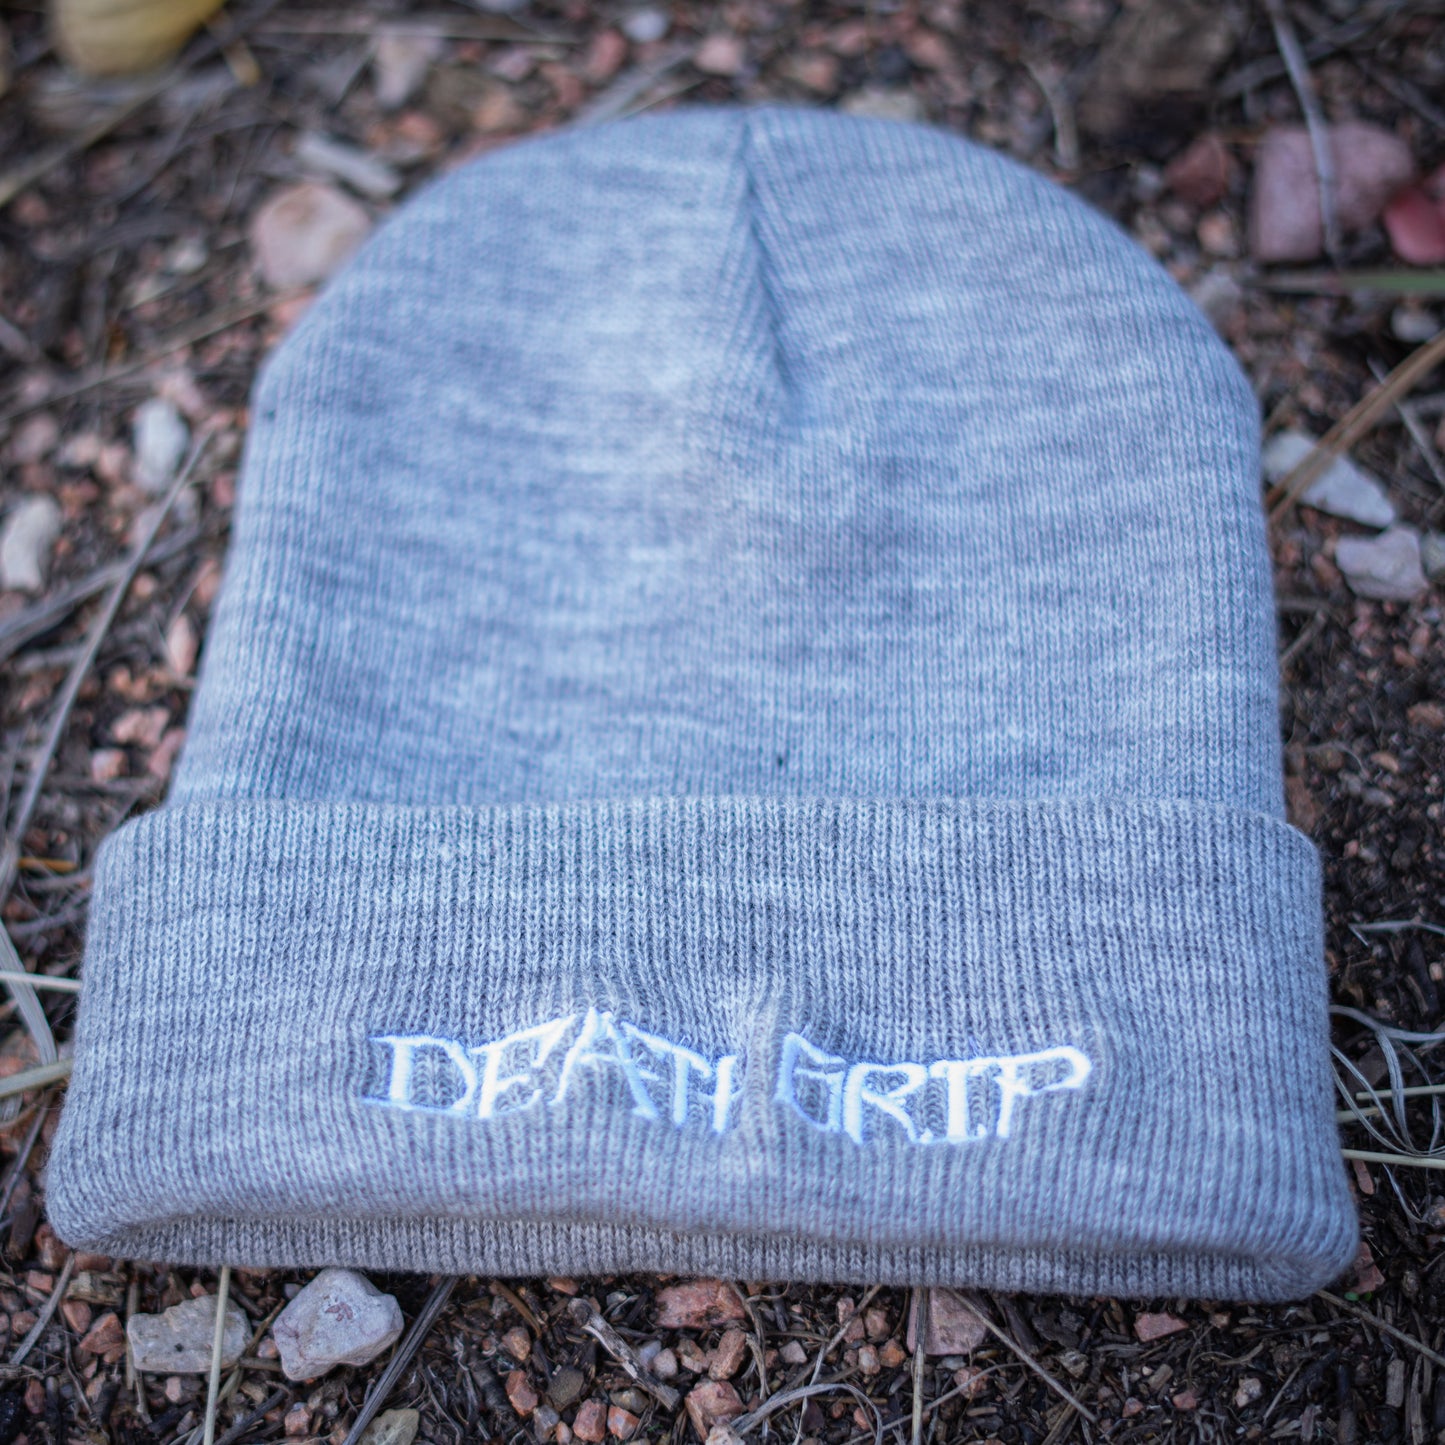 Death Grip Beanie w/ Embroidered Death Grip Logo